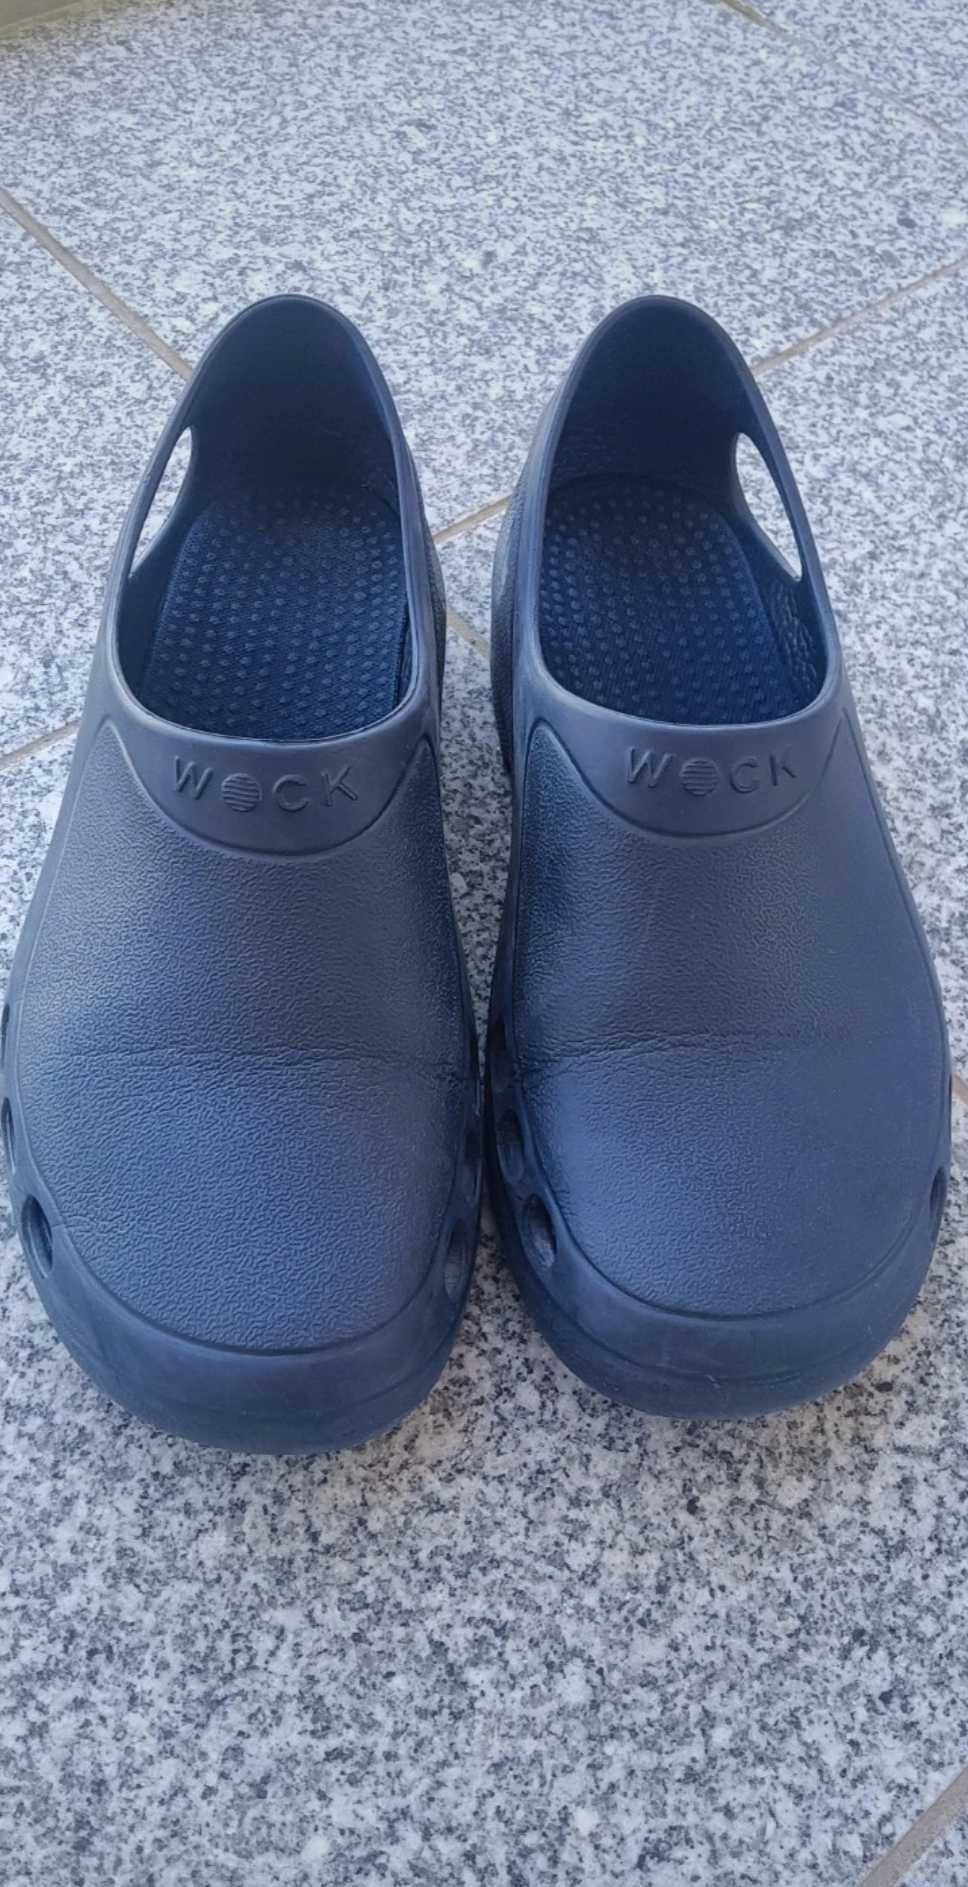 Sapatos de trabalho (Wock Everlite Navy Blue)